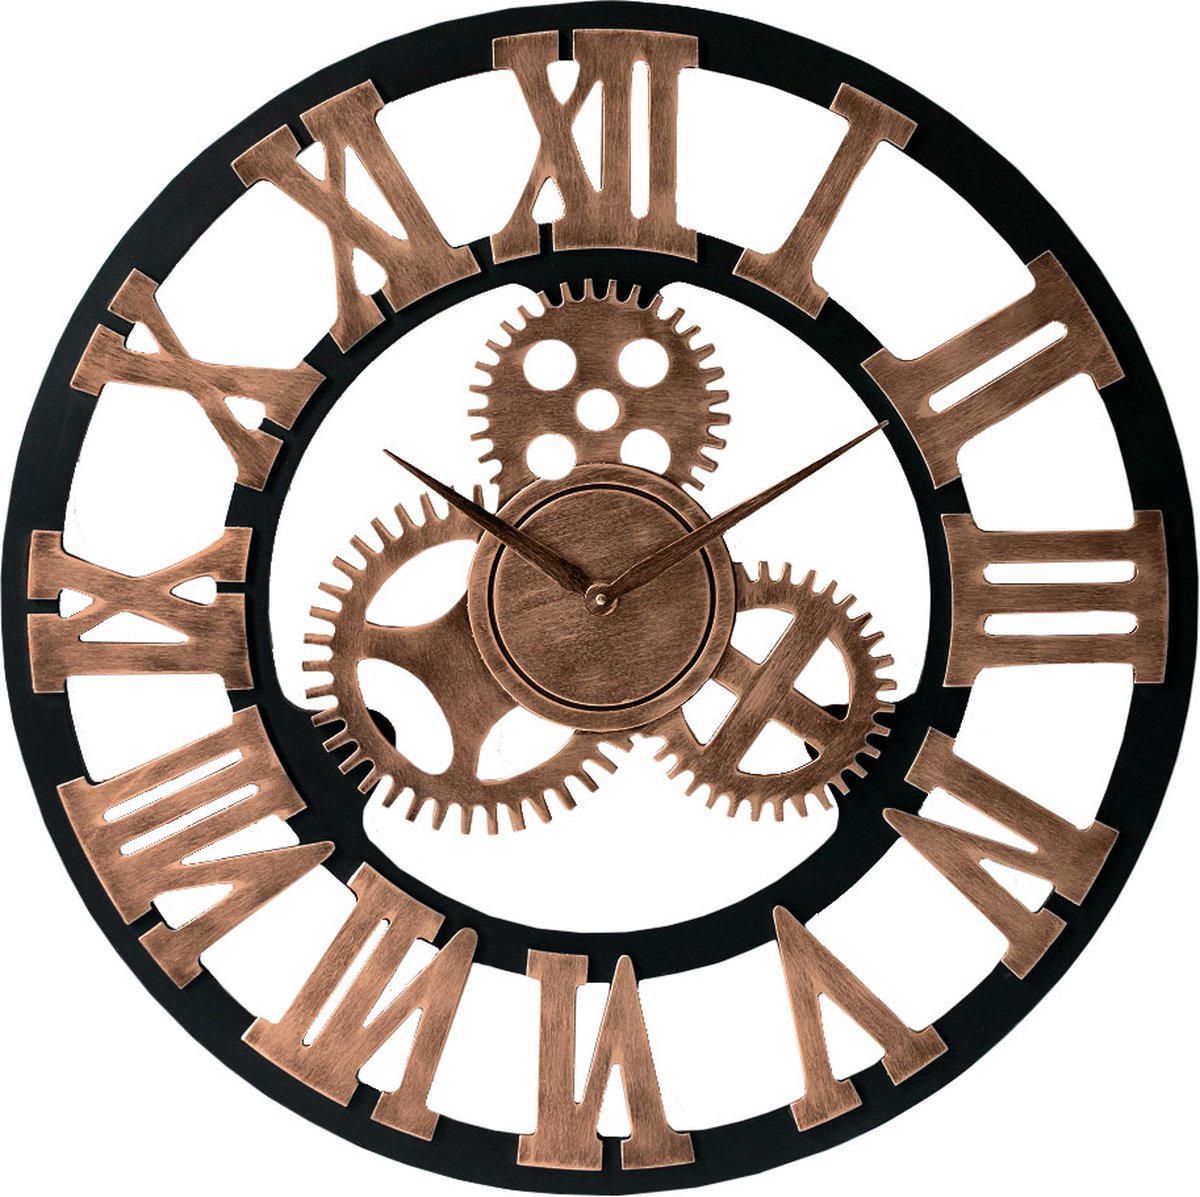 LW Collection Wandklok hout brons met tandwielen 60cm - grote industriële wandklok - Wandklok met wielen romeinse cijfers - Landelijke klok stil uurwerk - LW collection